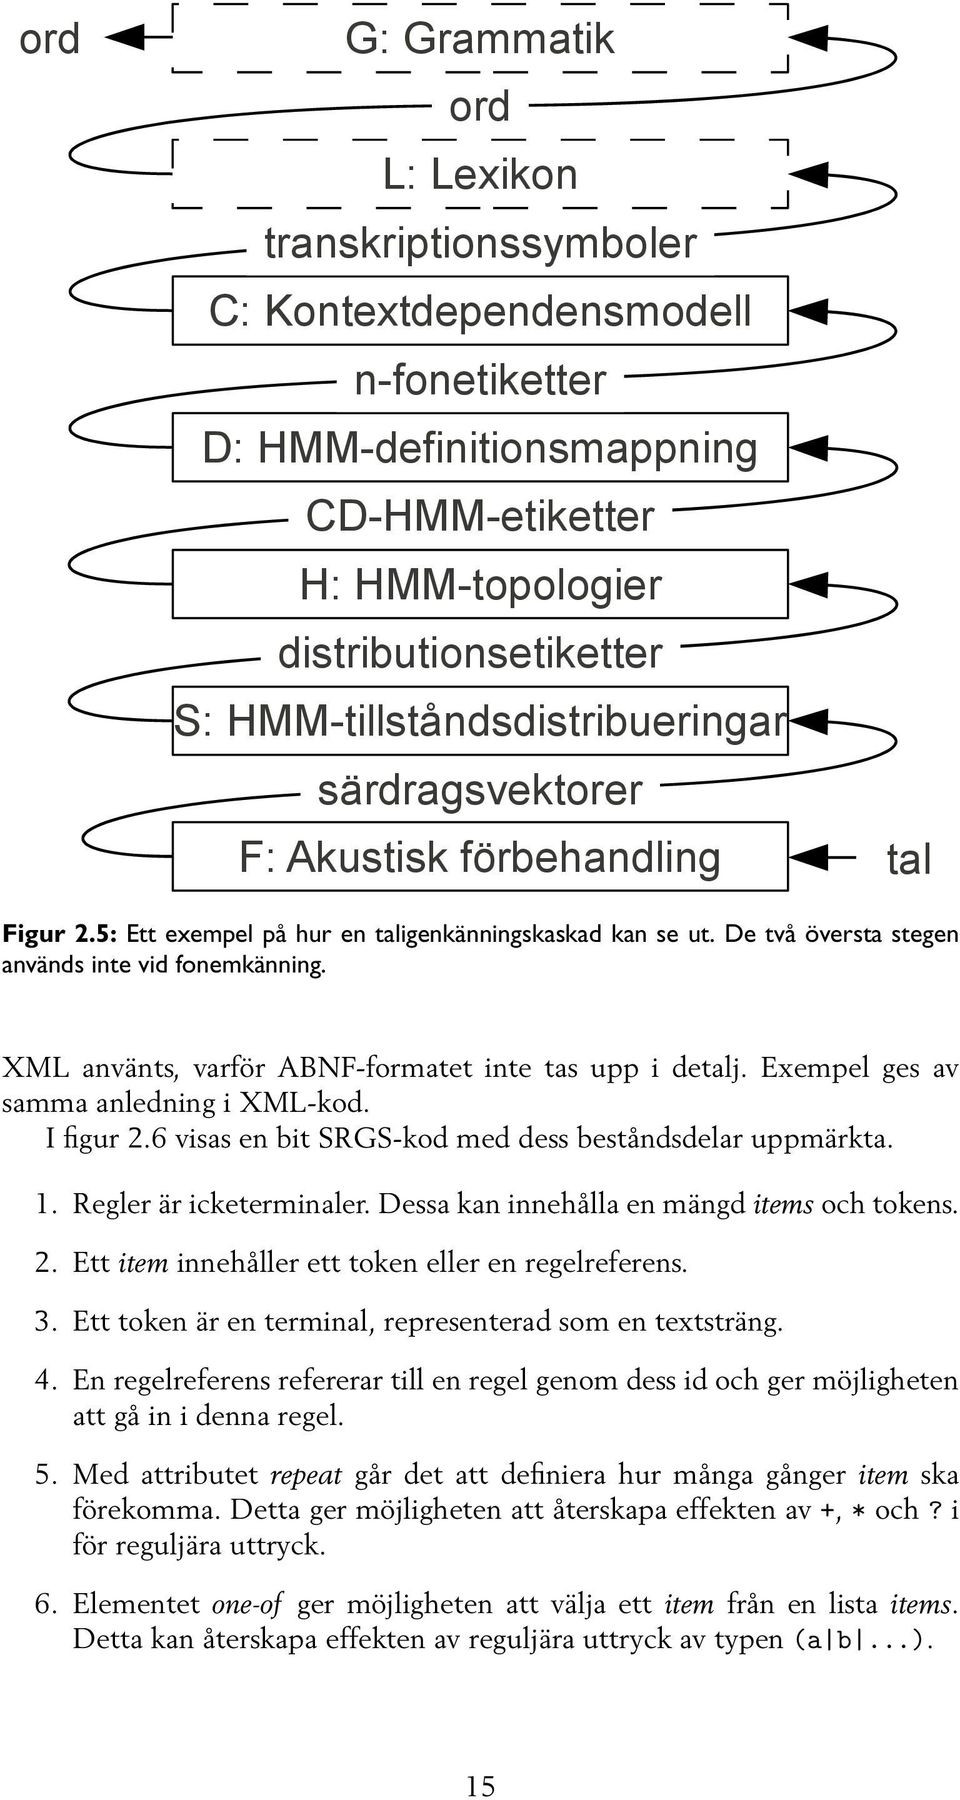 XML använts, varför ABNF-formatet inte tas upp i detalj. Exempel ges av samma anledning i XML-kod. I figur 2.6 visas en bit SRGS-kod med dess beståndsdelar uppmärkta. 1. Regler är icketerminaler.